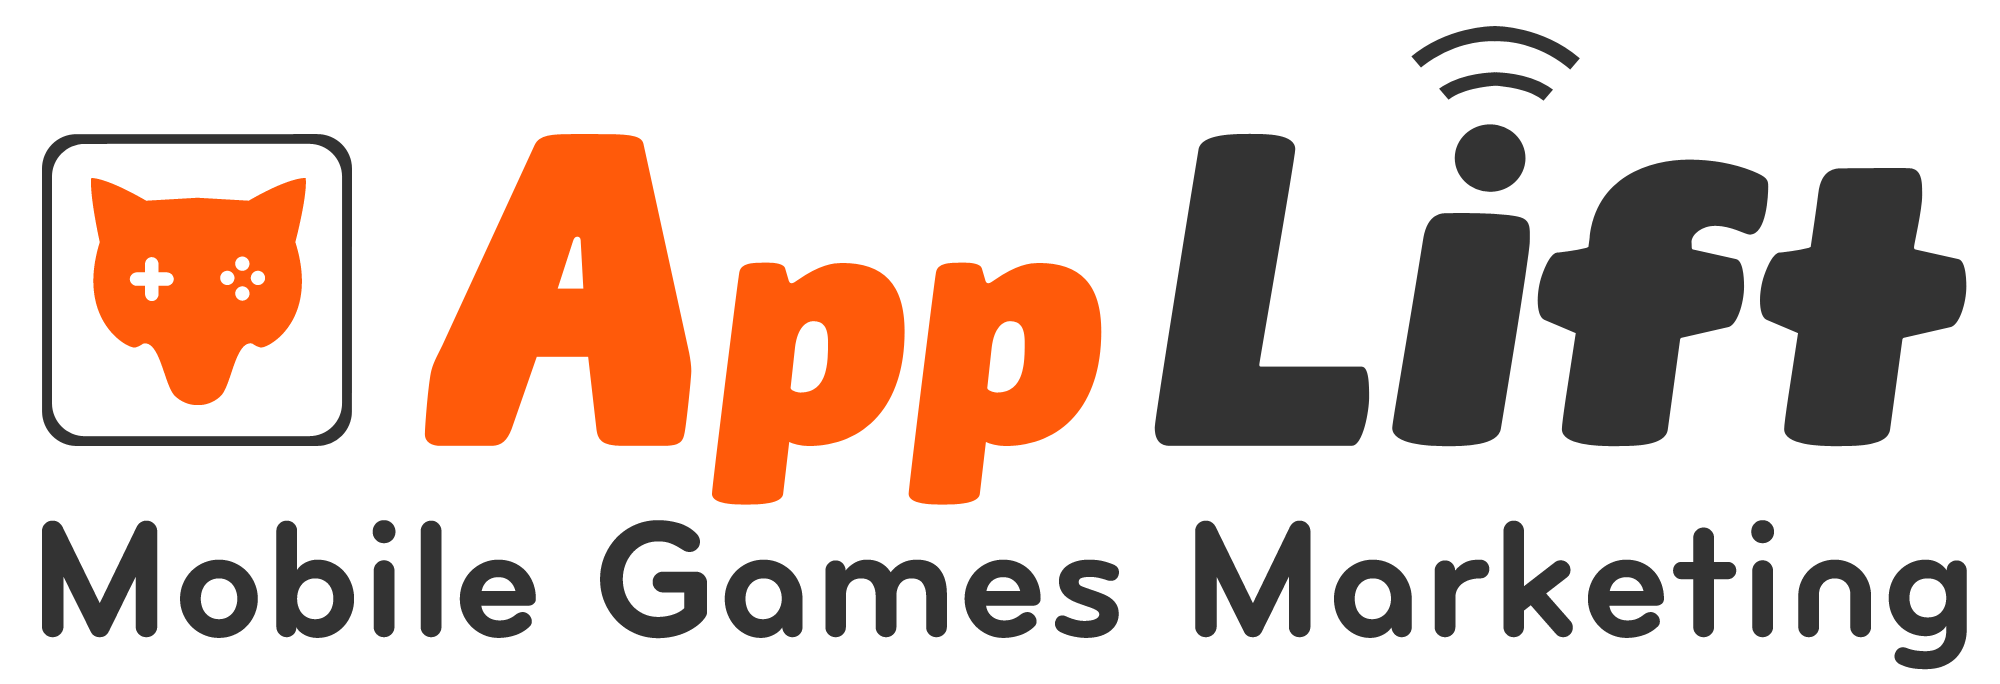 Applift_logo